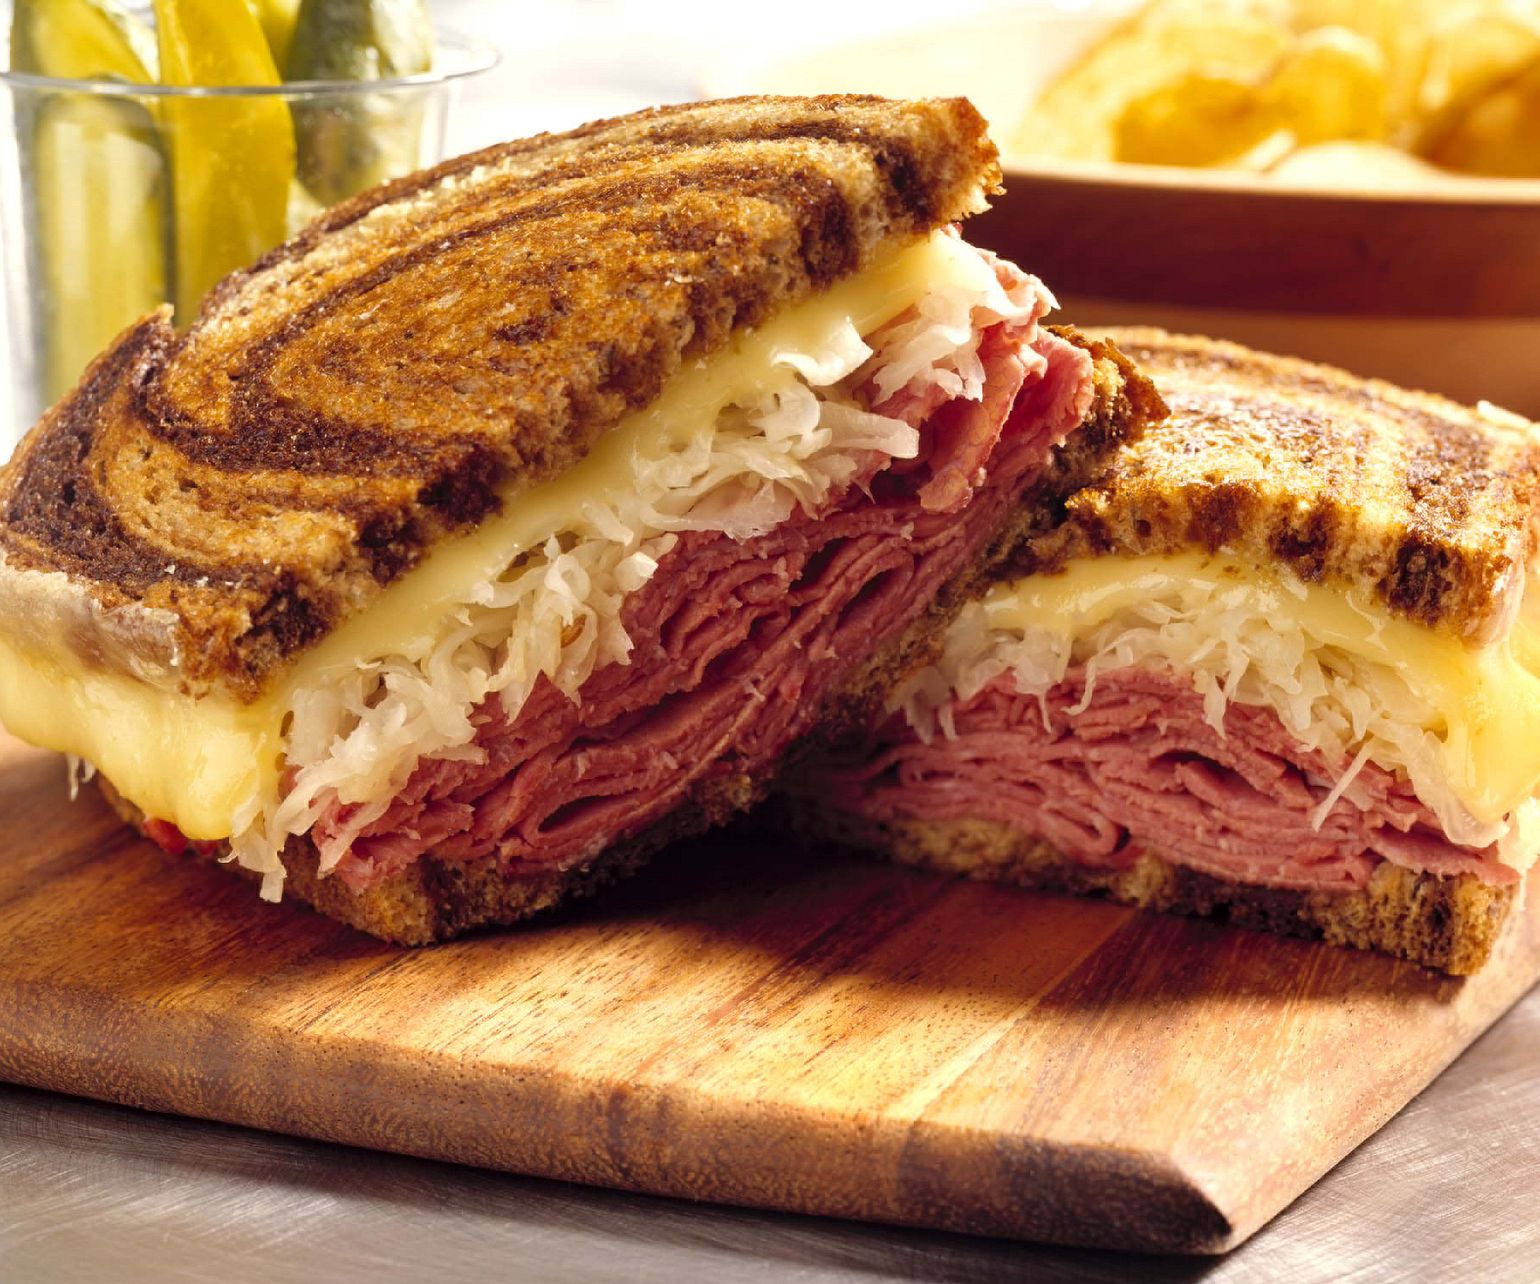 Classic Beef Reuben Sandwich